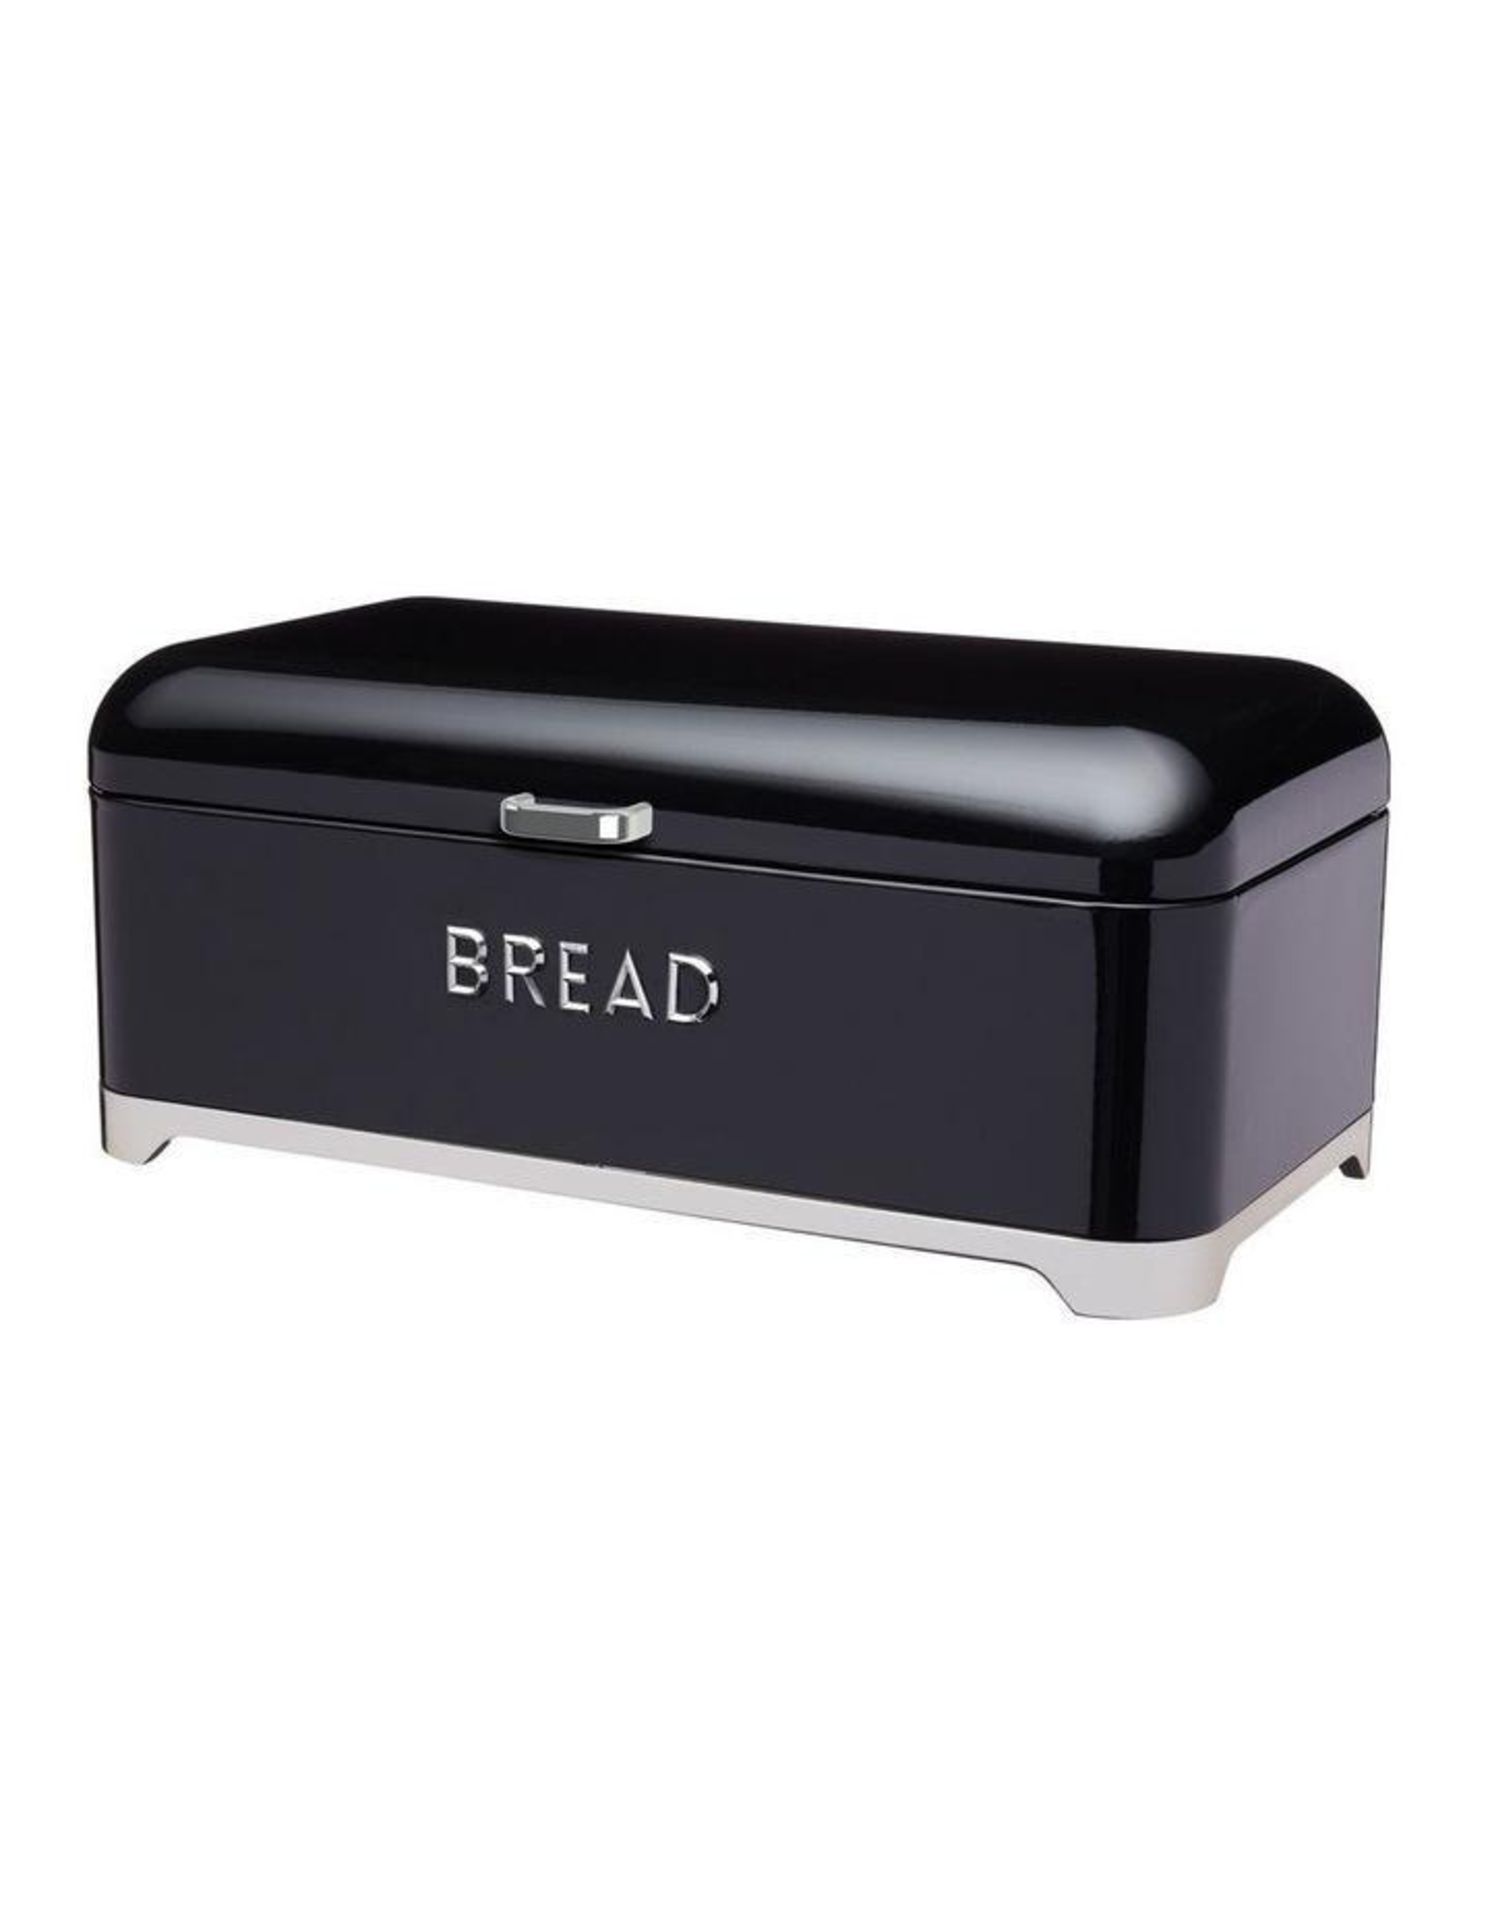 Bread Bin Black